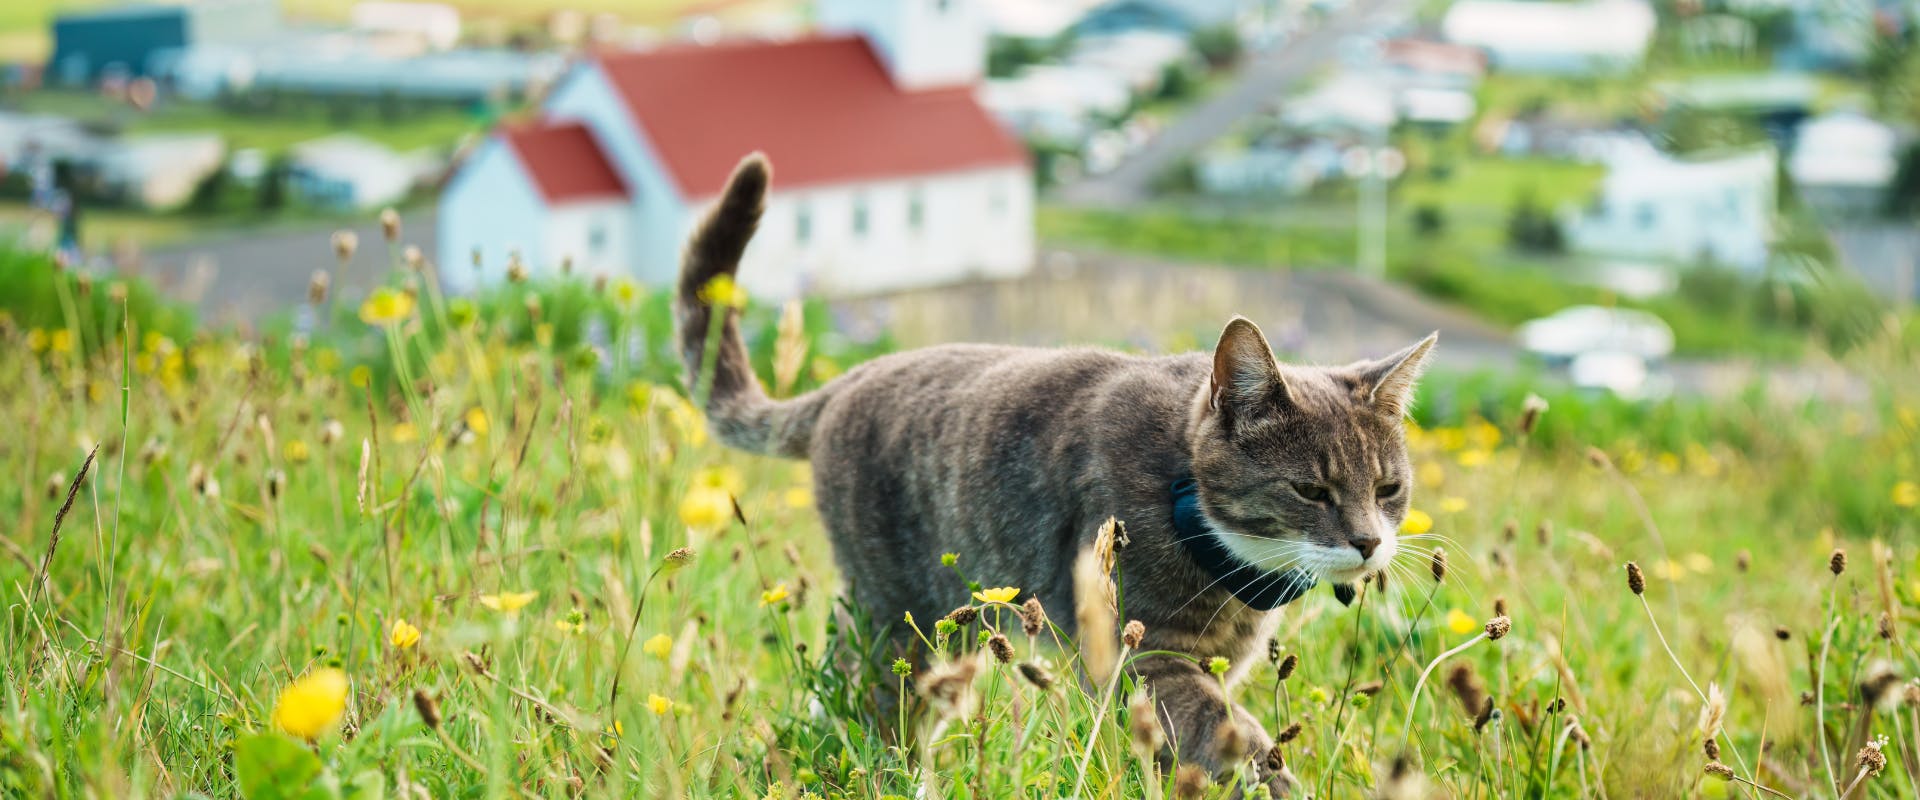 A cat walks through the Scandinavian countryside.